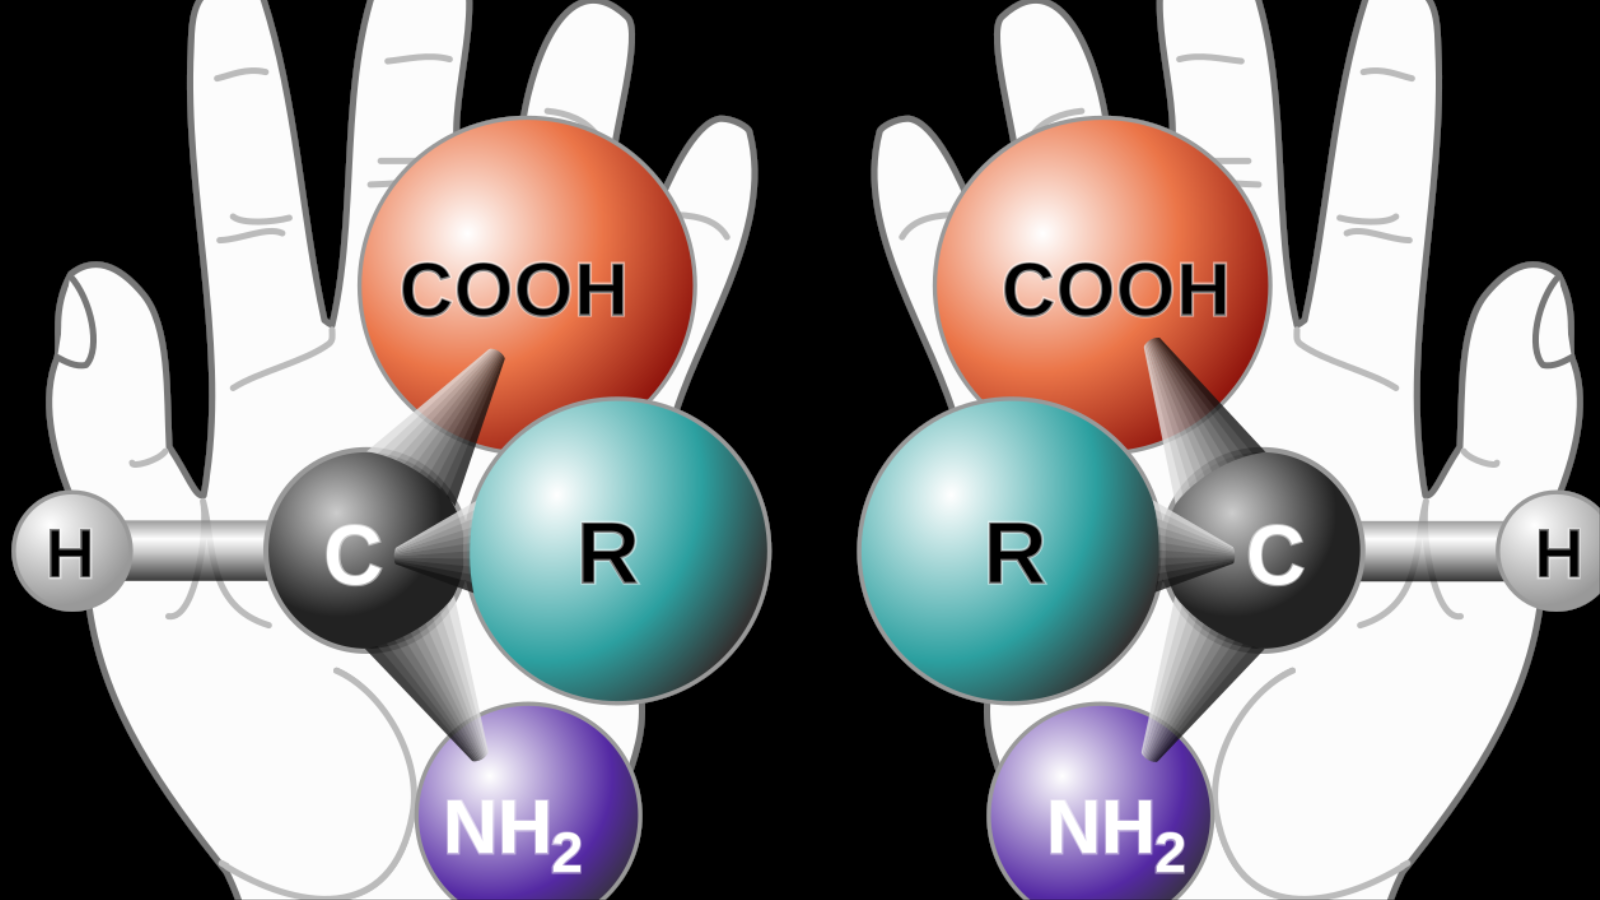 ‪العديد من الجزيئات البيولوجية تظهر في نسختين تشبه اليدين فيما يسمى الكيرالية (ويكيبيديا)‬ العديد من الجزيئات البيولوجية تظهر في نسختين تشبه اليدين فيما يسمى الكيرالية (ويكيبيديا)